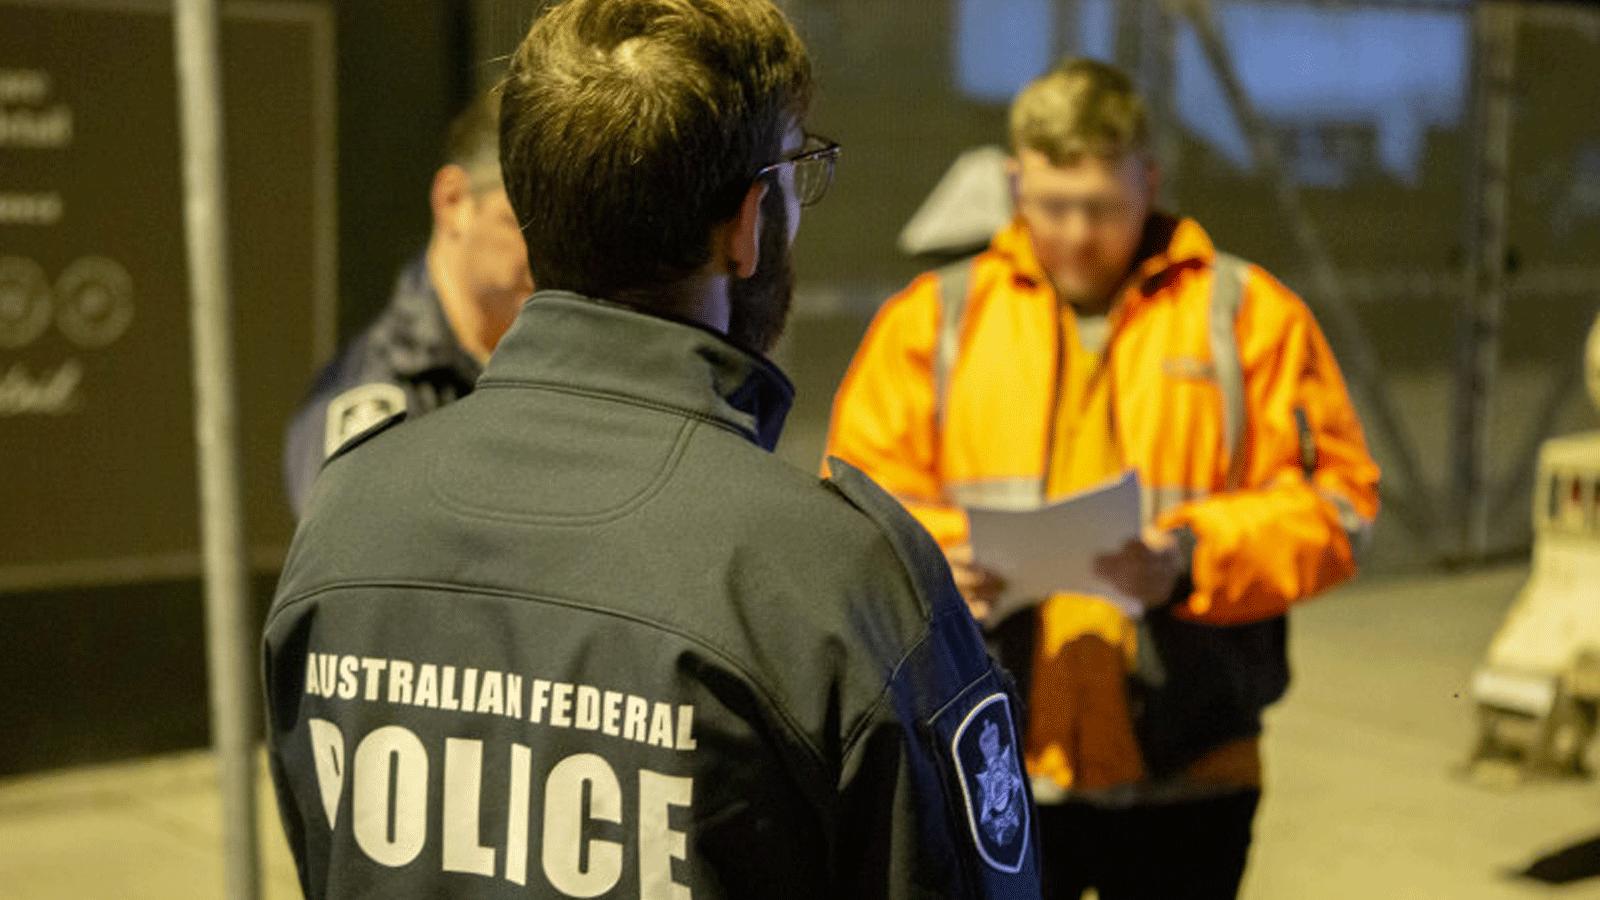 الشرطة الفدرالية في أستراليا تُلقي القبض على رجلين في مرفأ بوتاني بتهمة استيراد المخدرات